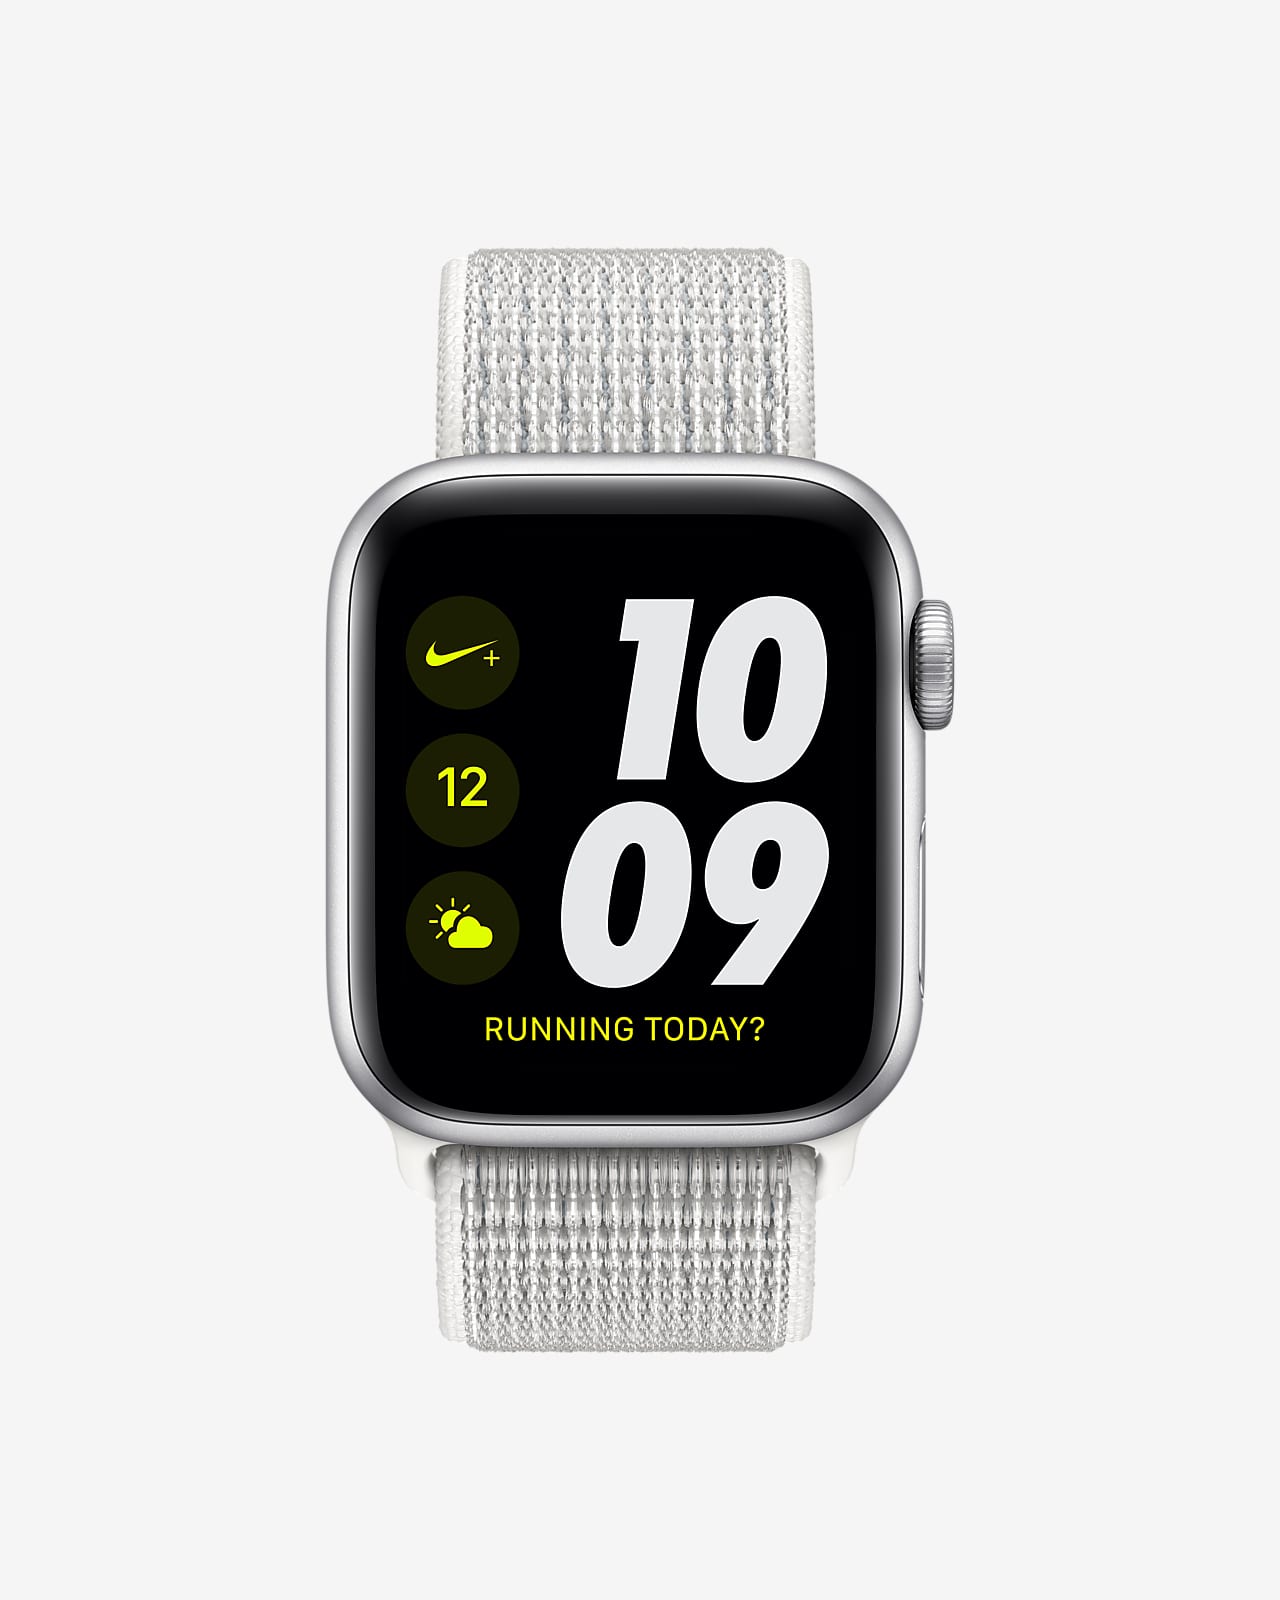 Apple Watch Nike+ Series 4（GPSモデル）- 40mm